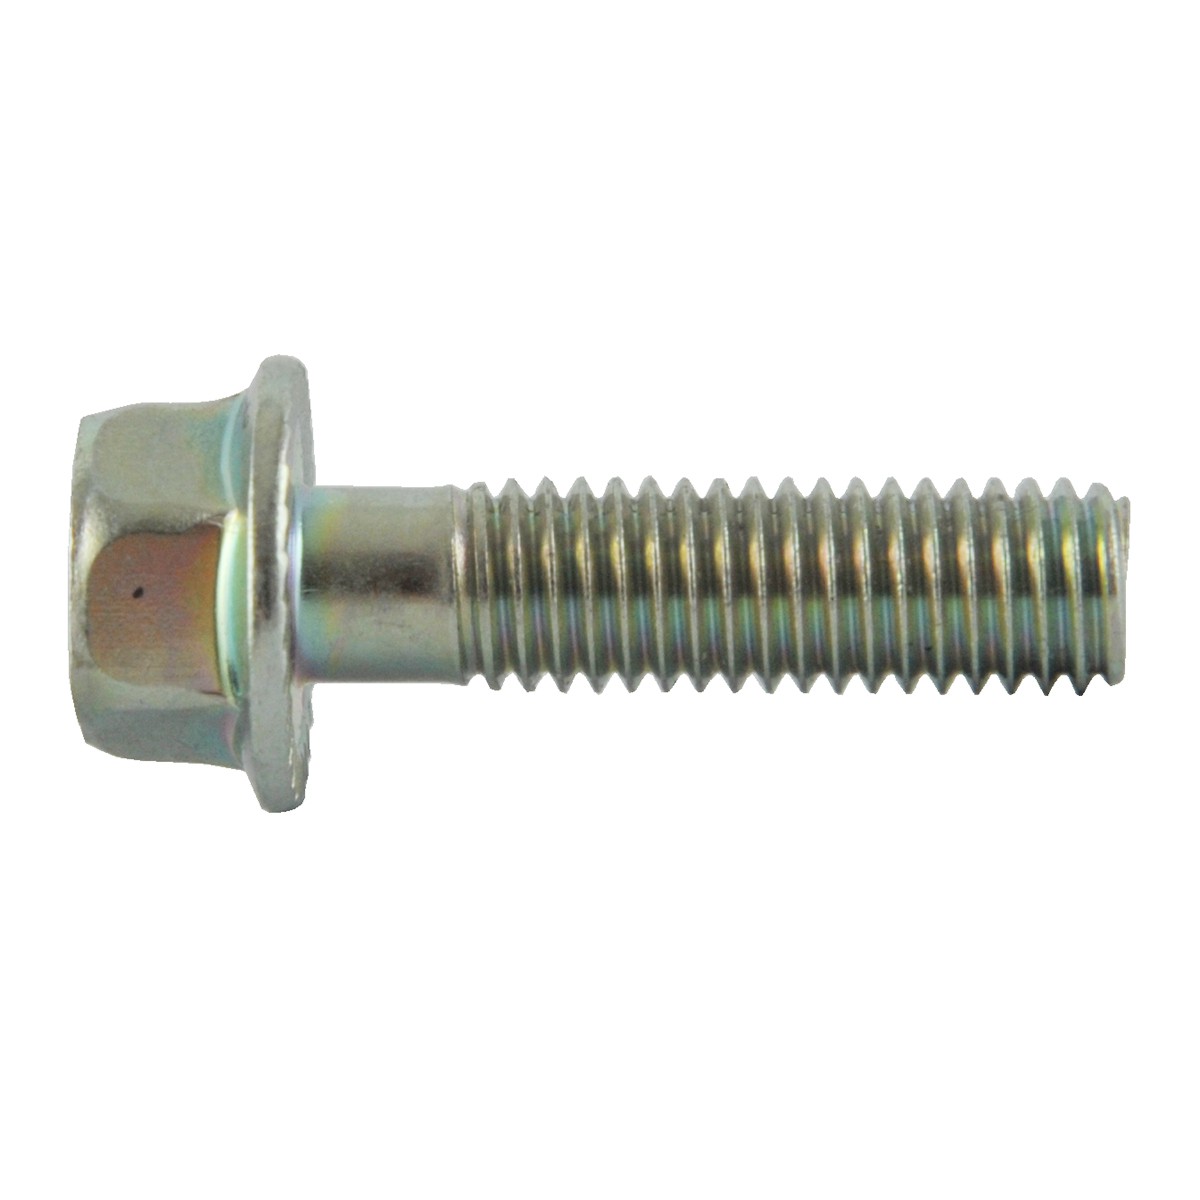 Flange screw M8 x 30 x 1.25 mm / 8.8 / LS MT3.35 / LS MT3.40 / LS MT3.50 / LS MT3.60 / 40268193